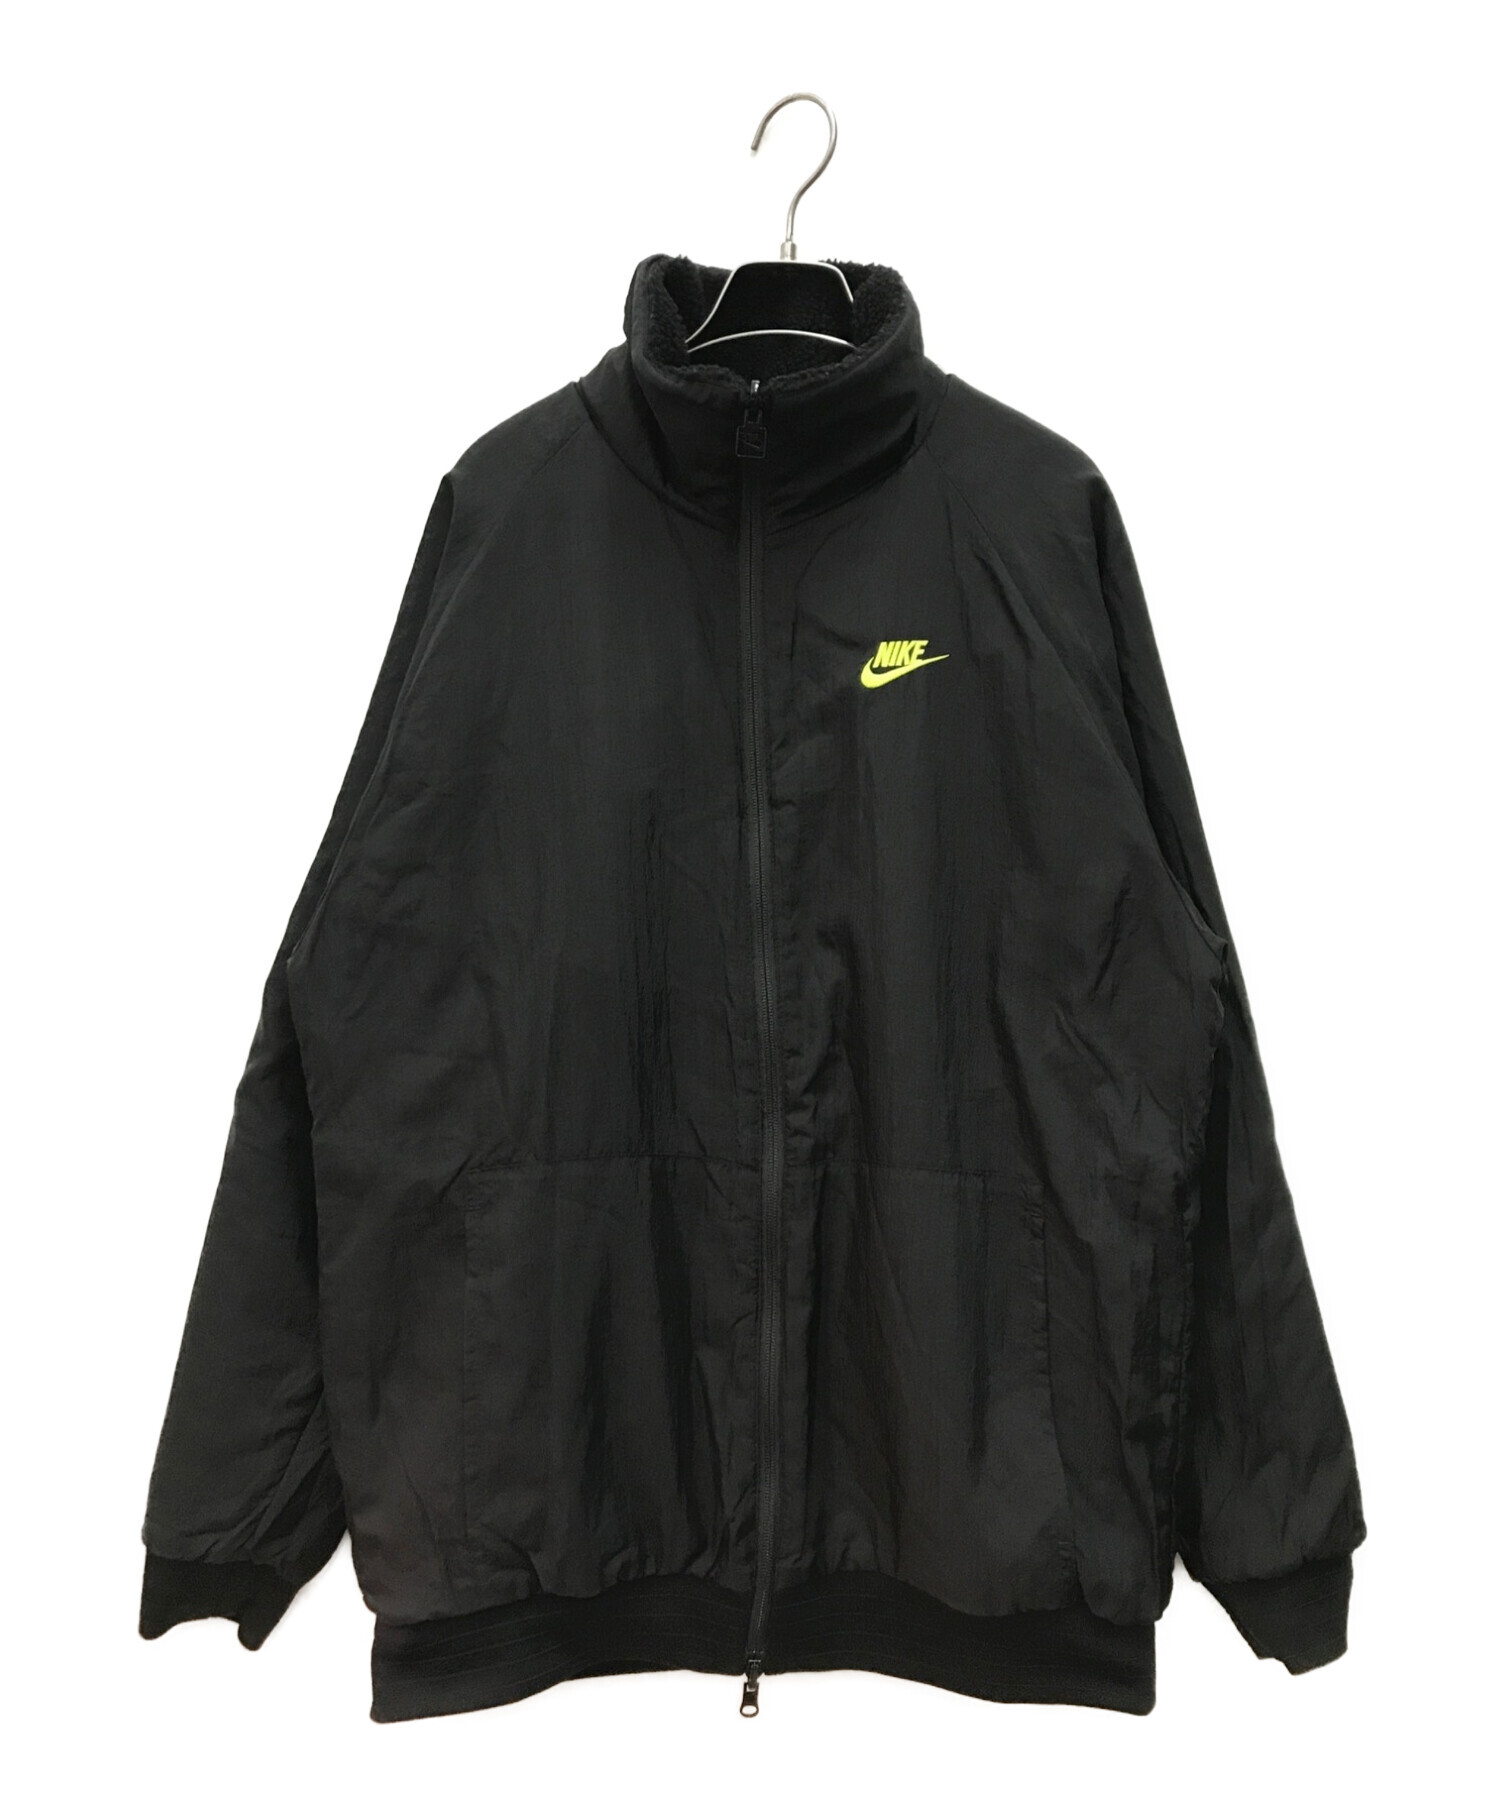 NIKE (ナイキ) リバーシブルボアジャケット ブラック サイズ:L